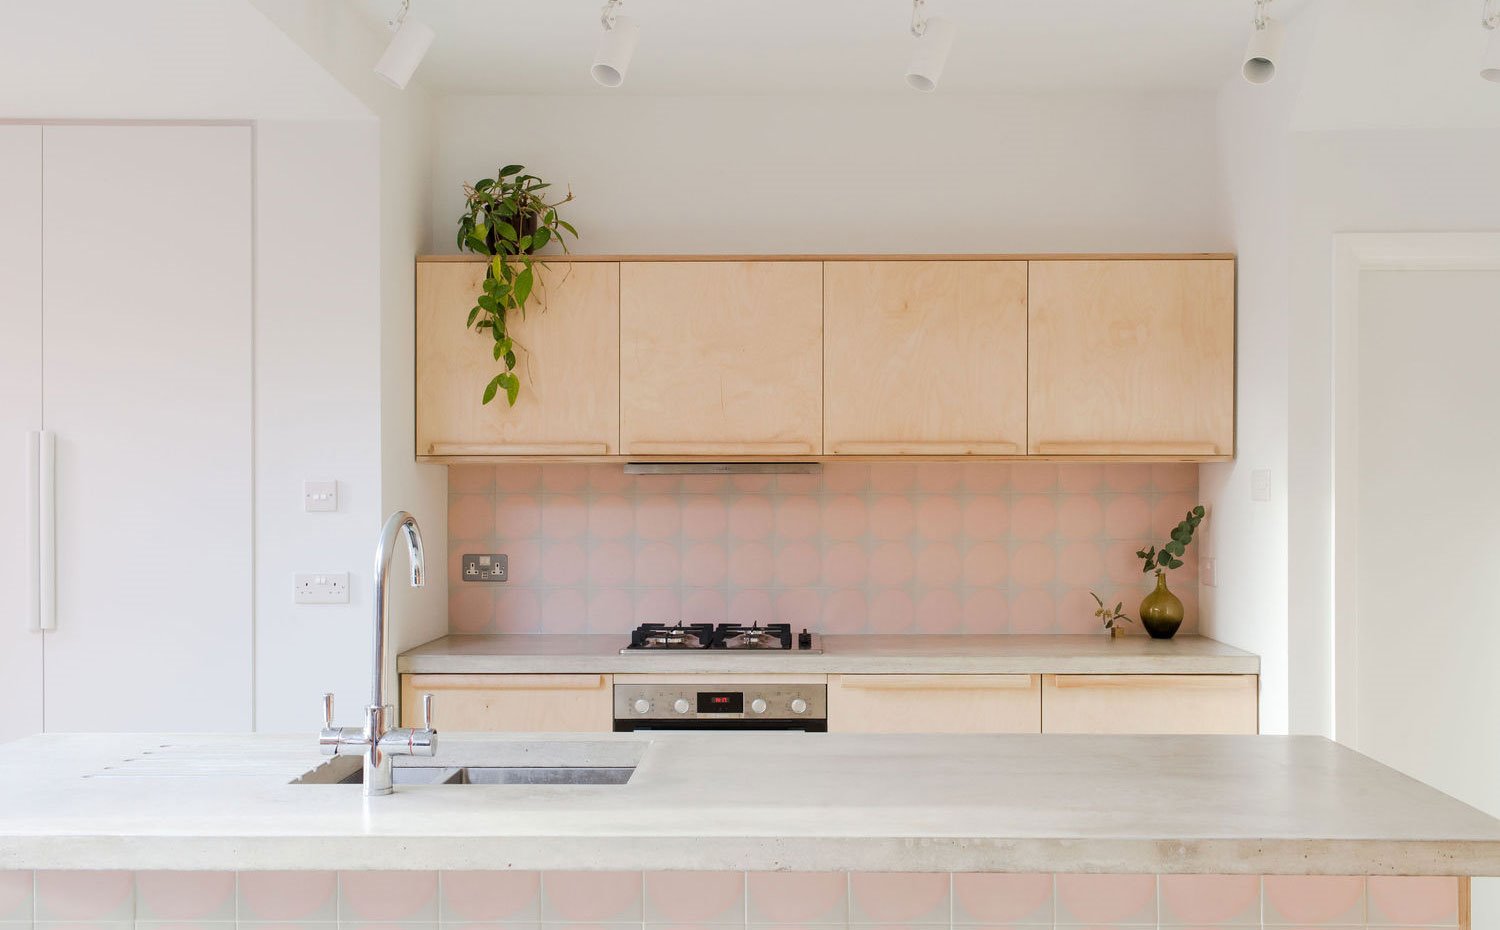 Frentes de cocina en madera clara, revestimientos en gres rosa, encimera de hormgión, armario encastrado en blanco